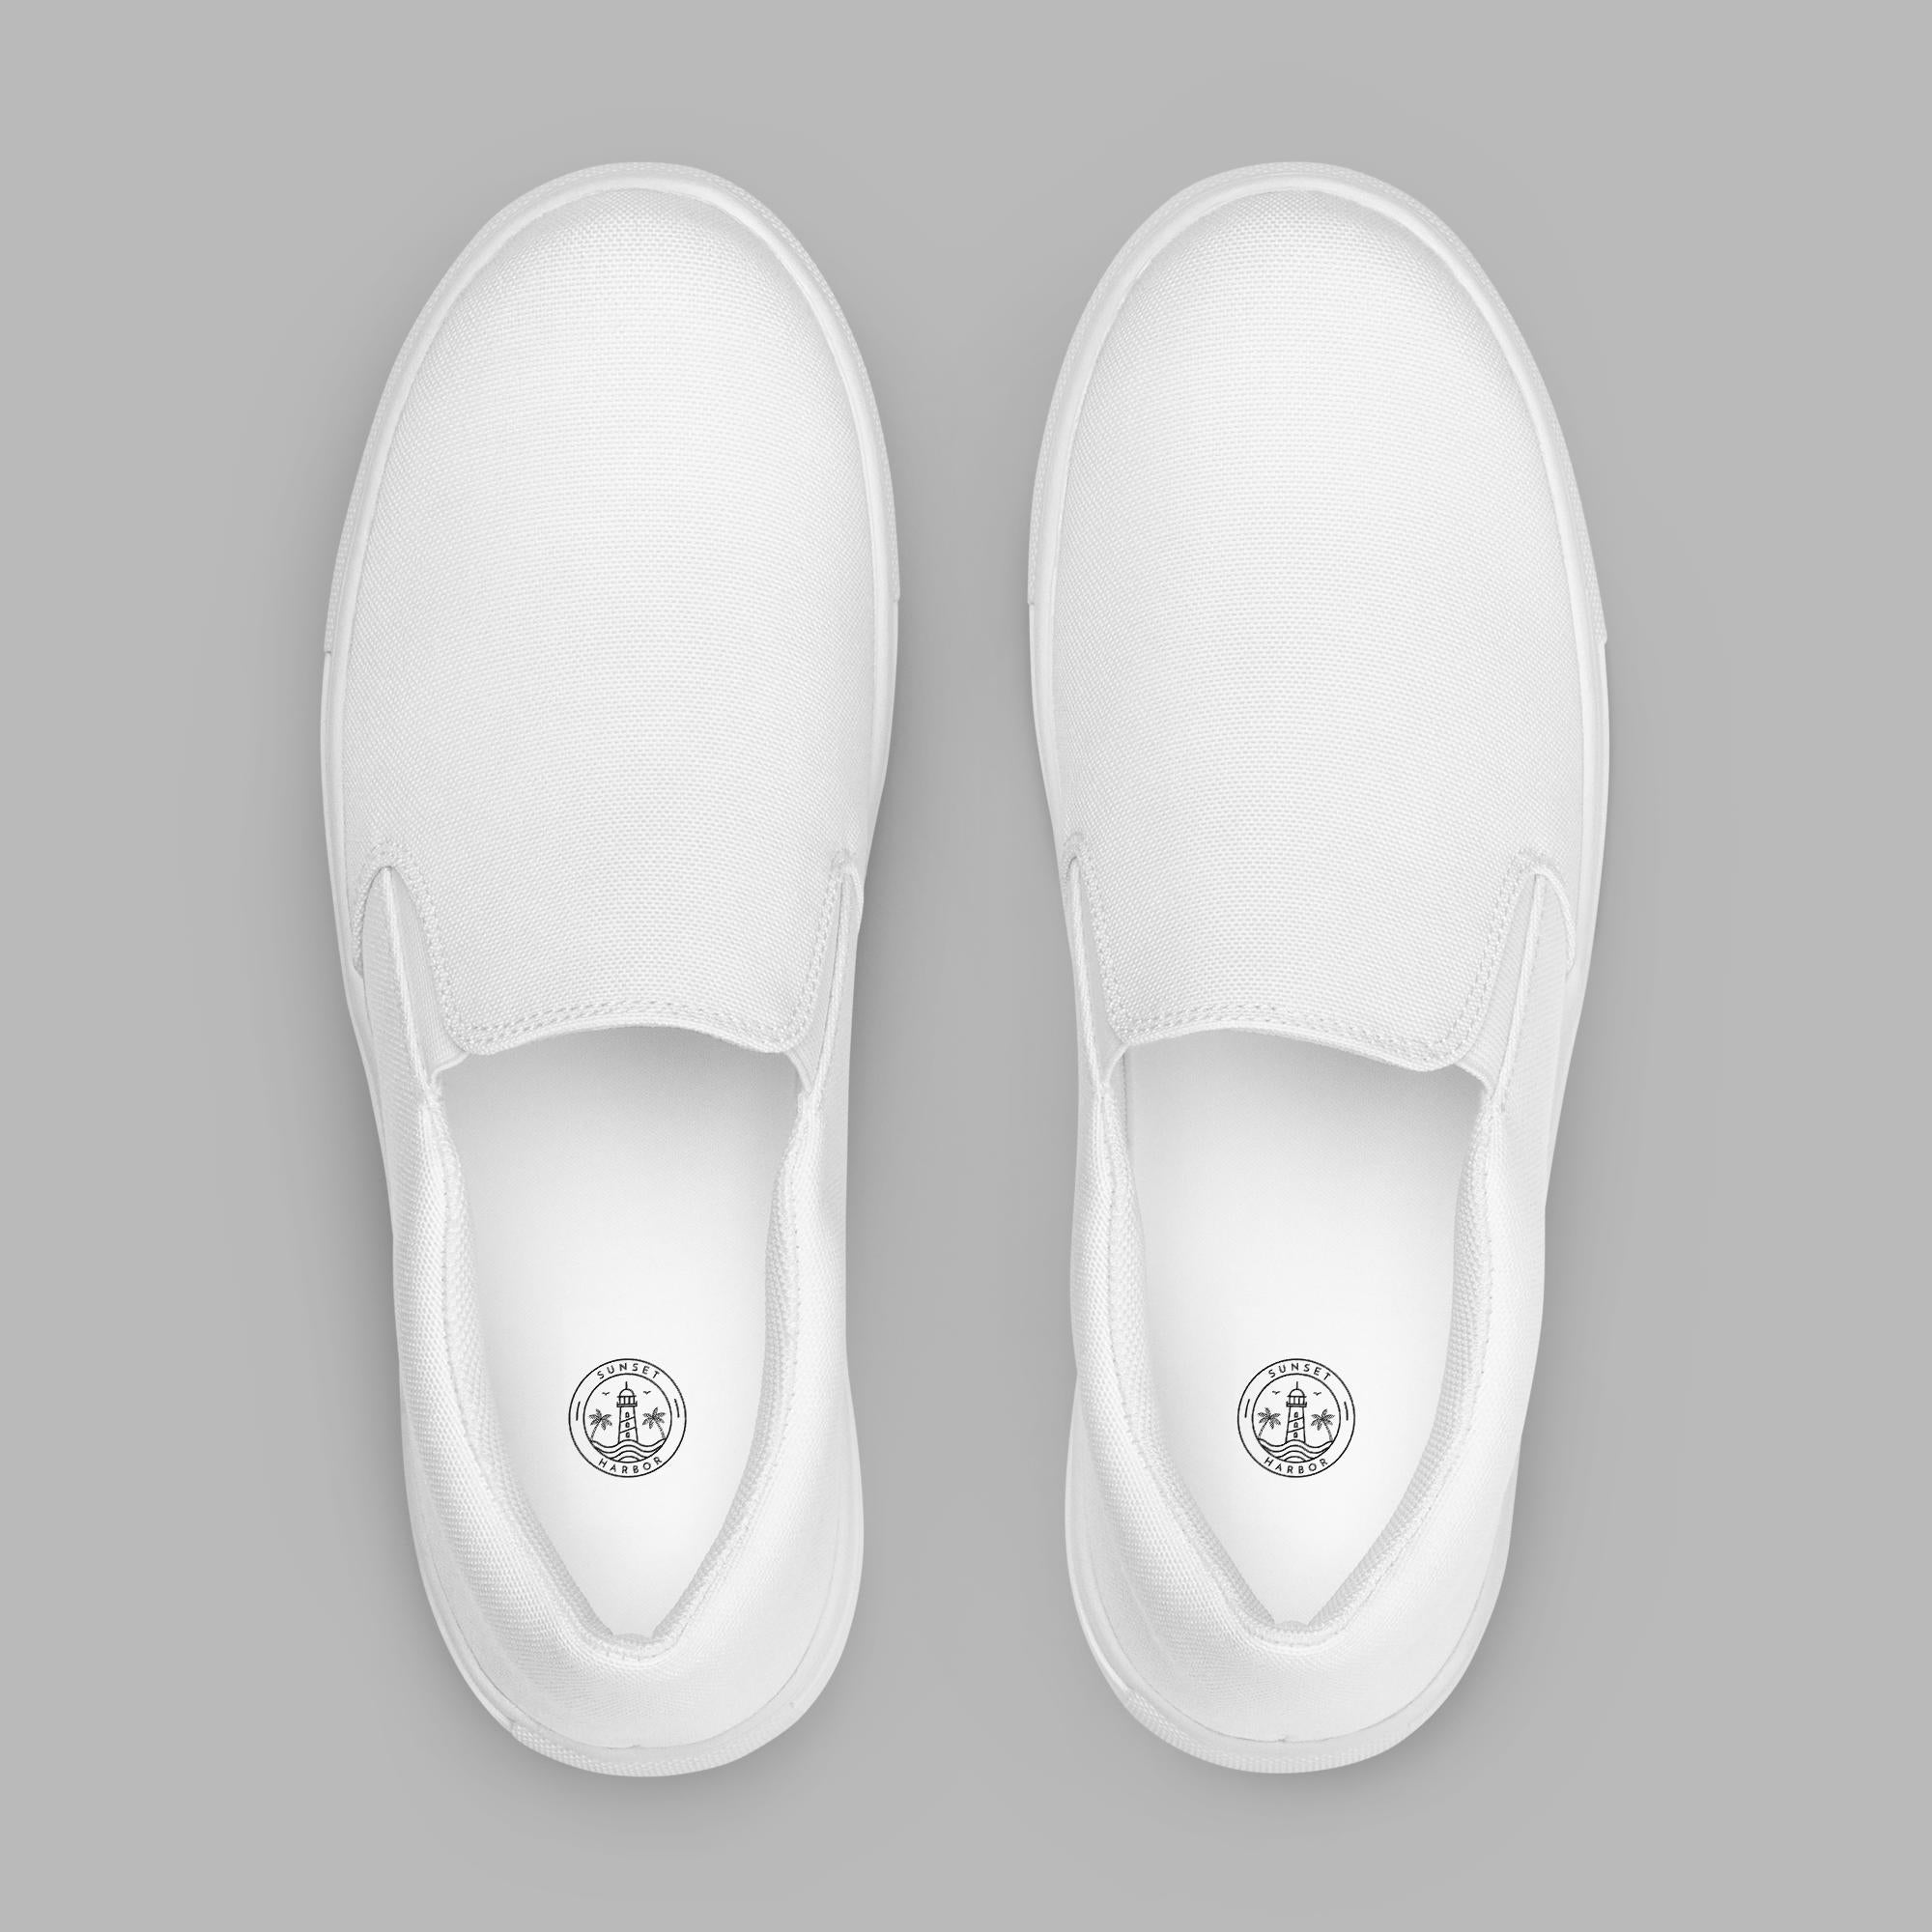 Zapatos de lona sin cordones para hombre - Blanco